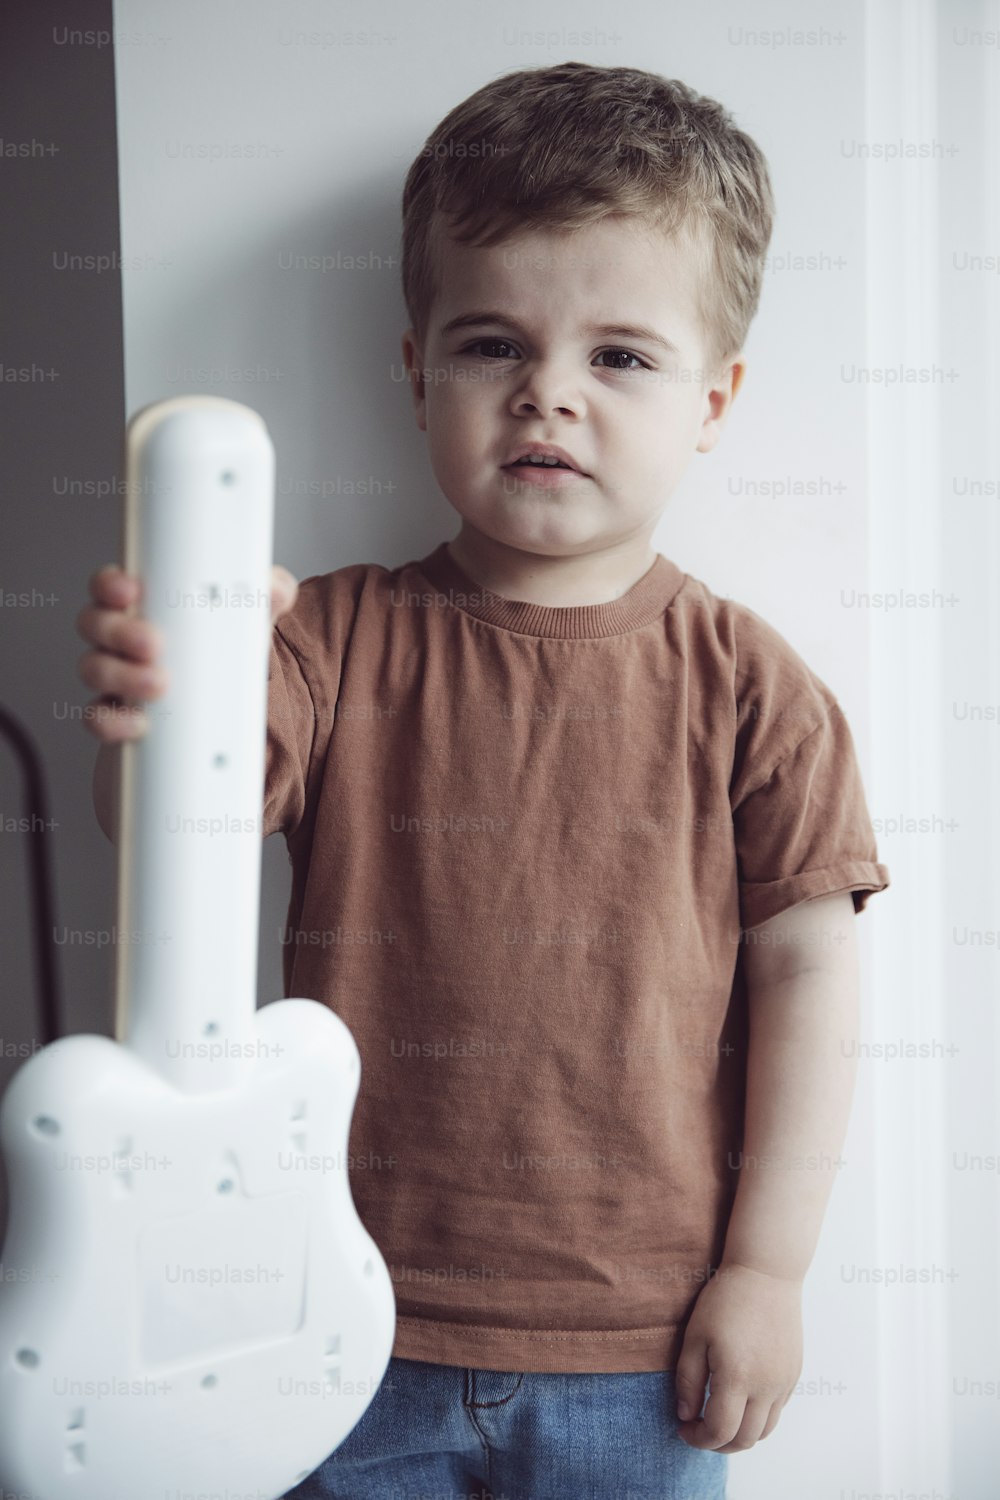 Un jeune garçon tenant un objet blanc en forme de guitare